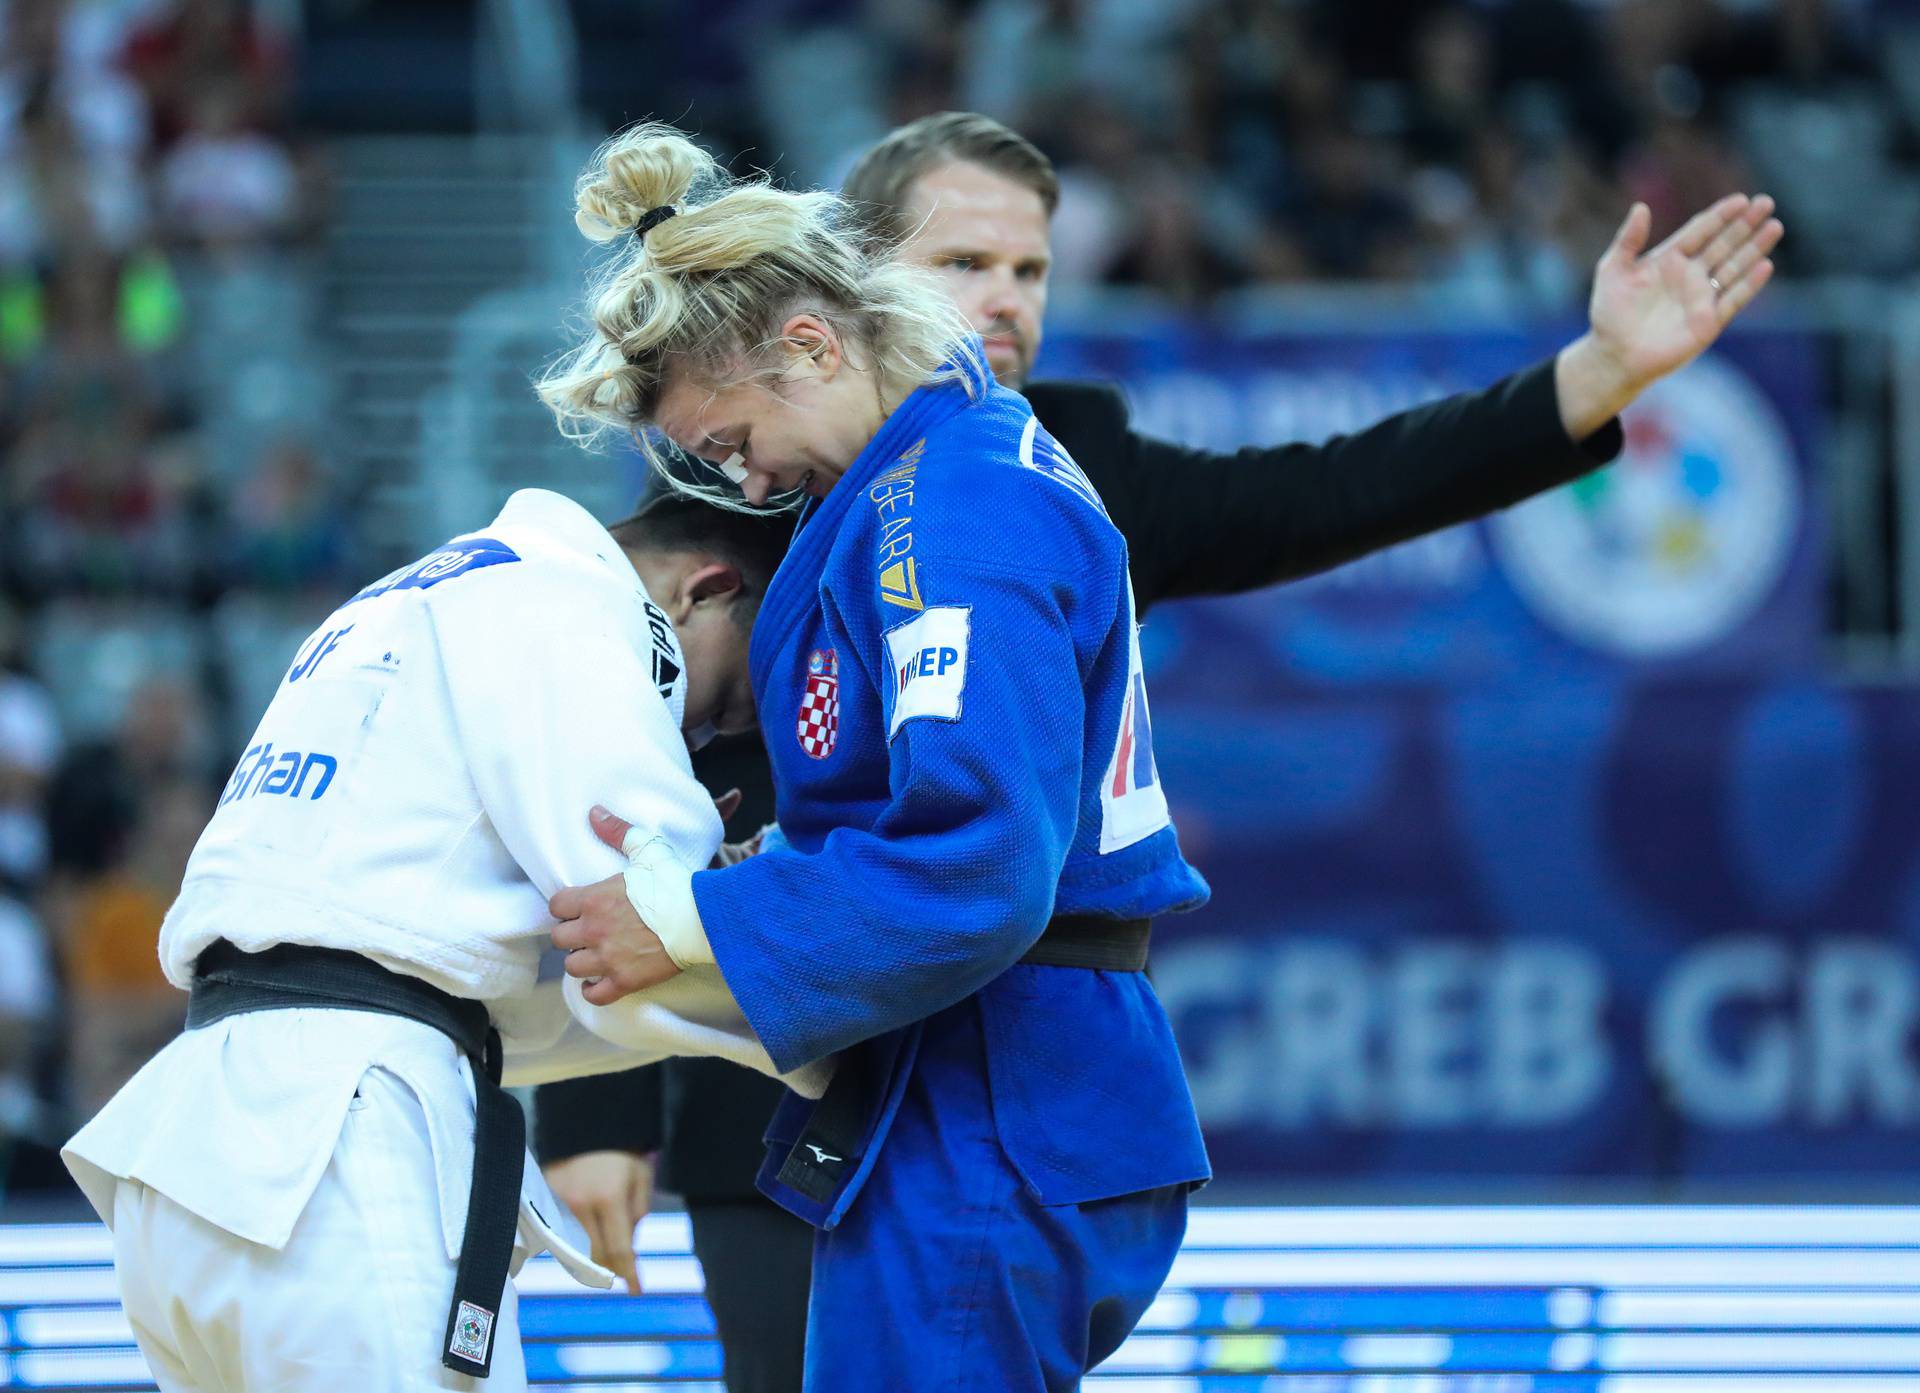 IJF World Judo Tour Zagreb Grand Prix, hrvatska judašica Lara Cvjetko u kategoriji do 70kg osvojila brončanu medalju